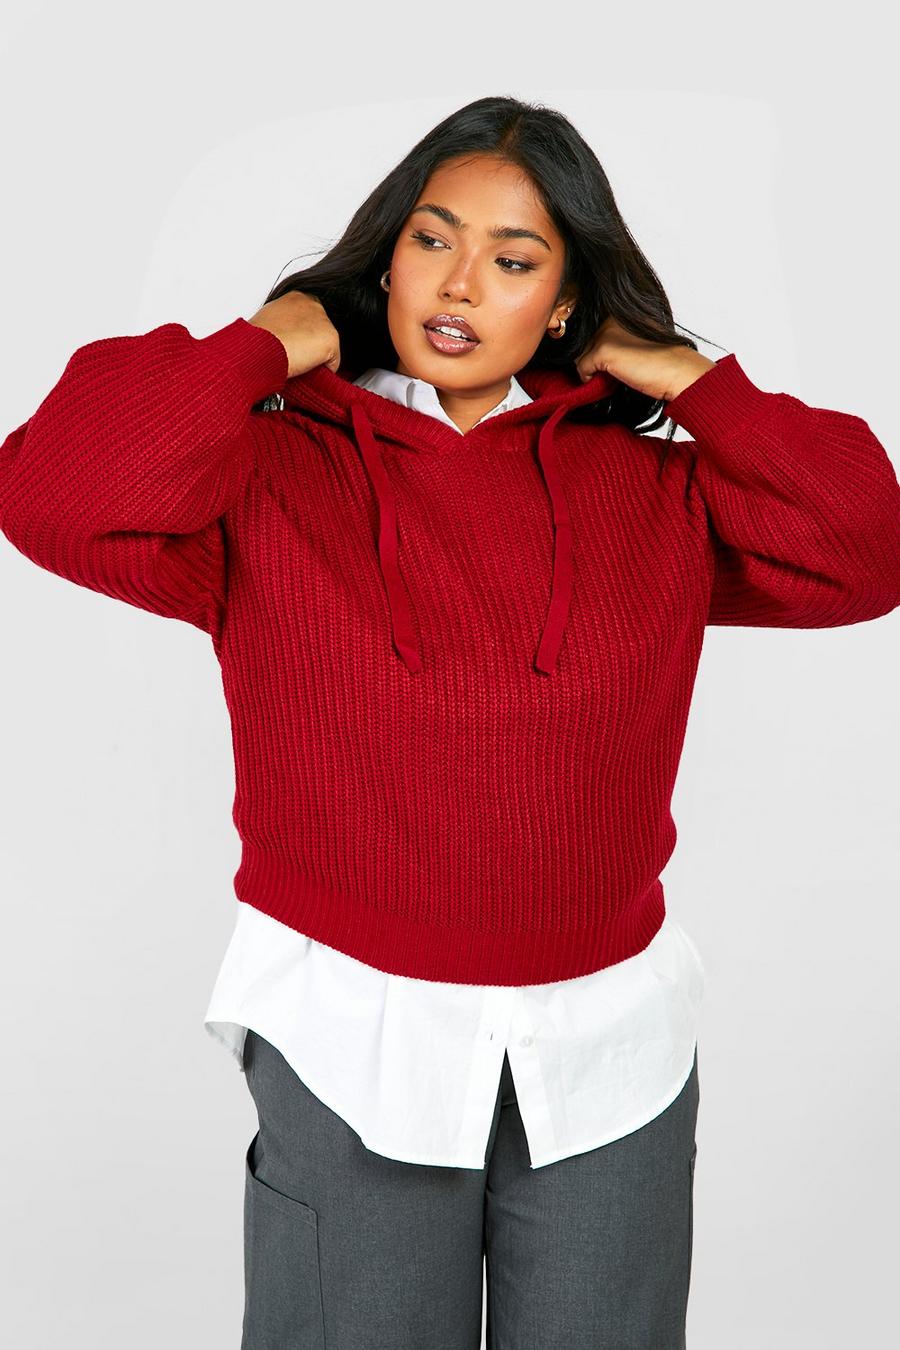 Maglione Plus Size da donna in maglia stile pescatore con cappuccio, Burgundy rosso